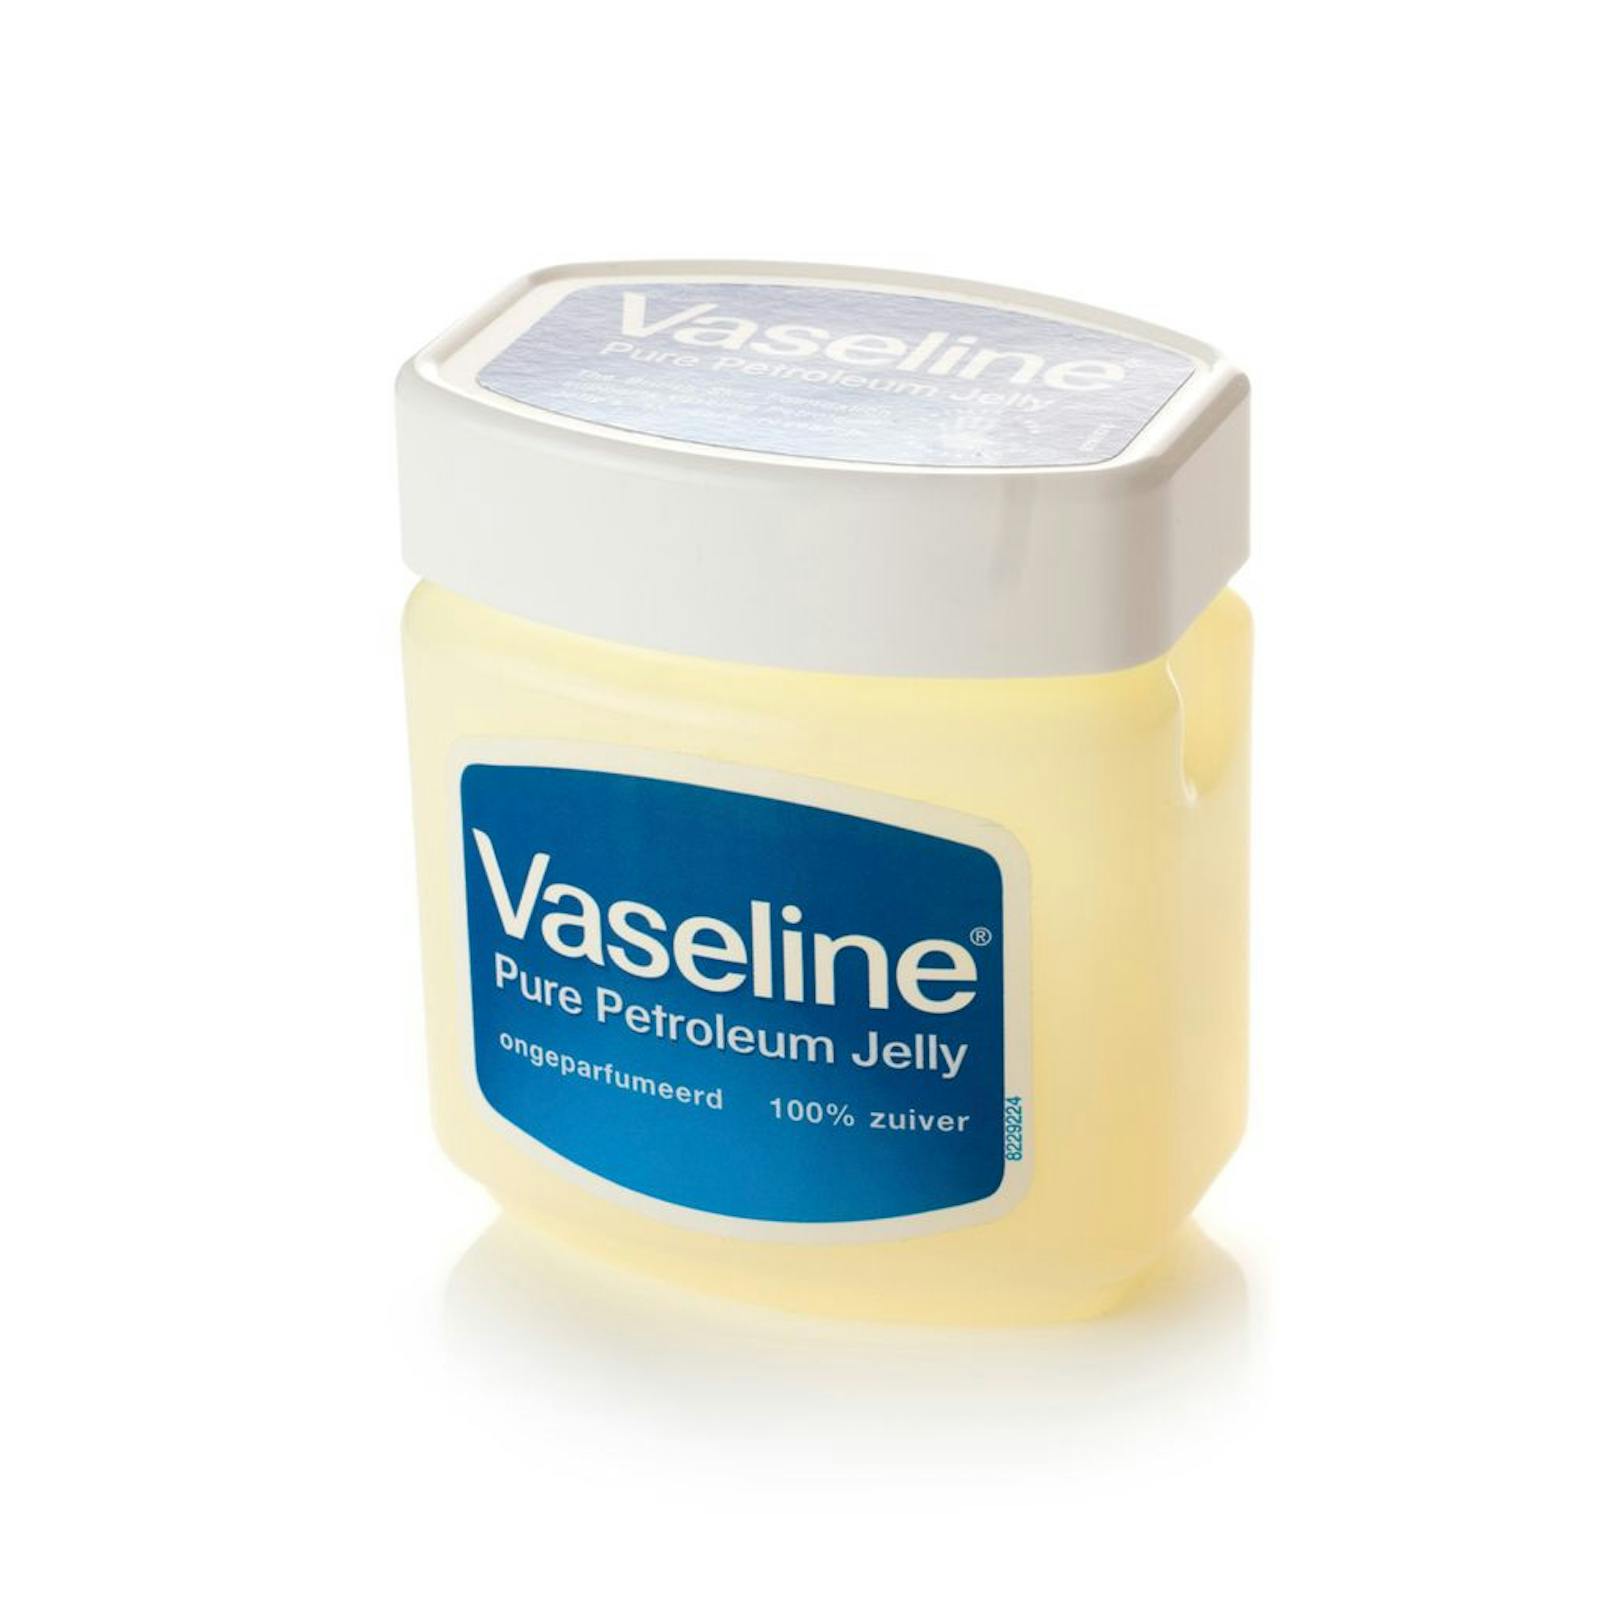 Vaseline ist seit einigen Jahrzehnten aus der Beauty-Branche nicht mehr wegzudenken. Als Basis für viele Produkte kann man es auch im Tiegel kaufen und für verschiedenste Dinge einsetzen.&nbsp;